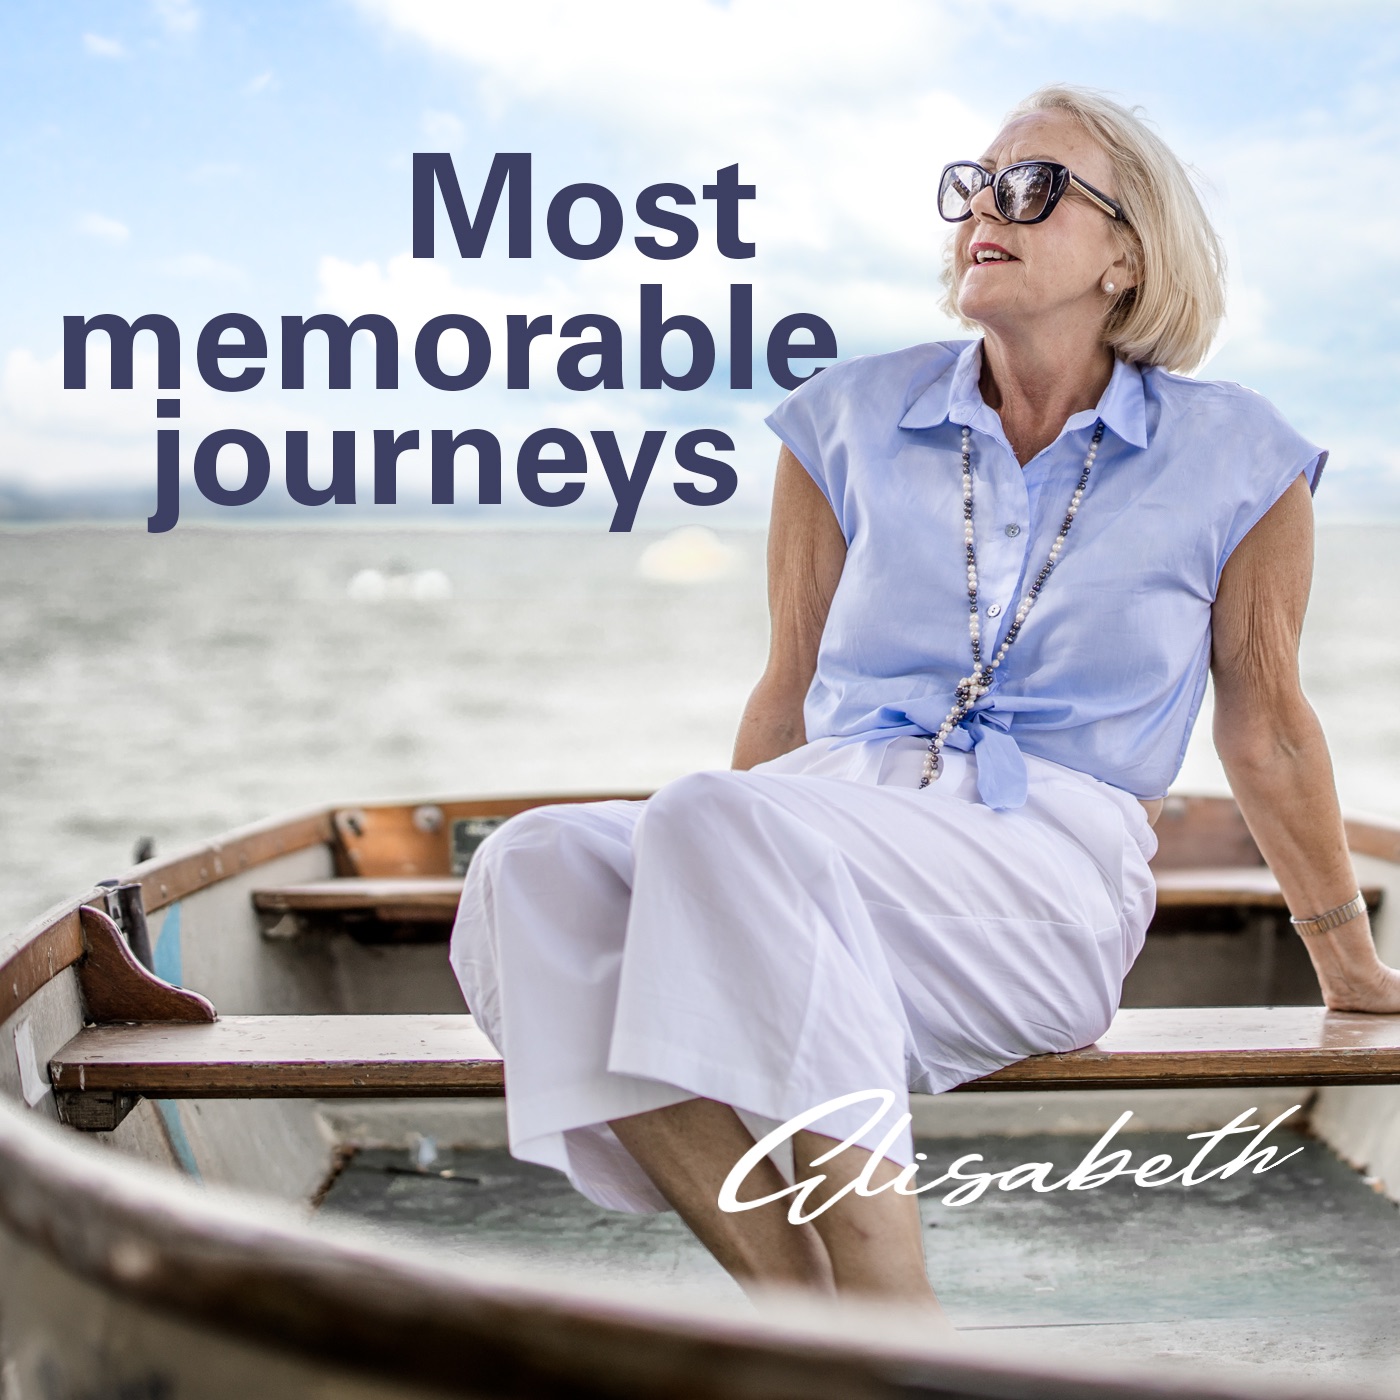 Most memorable journeys